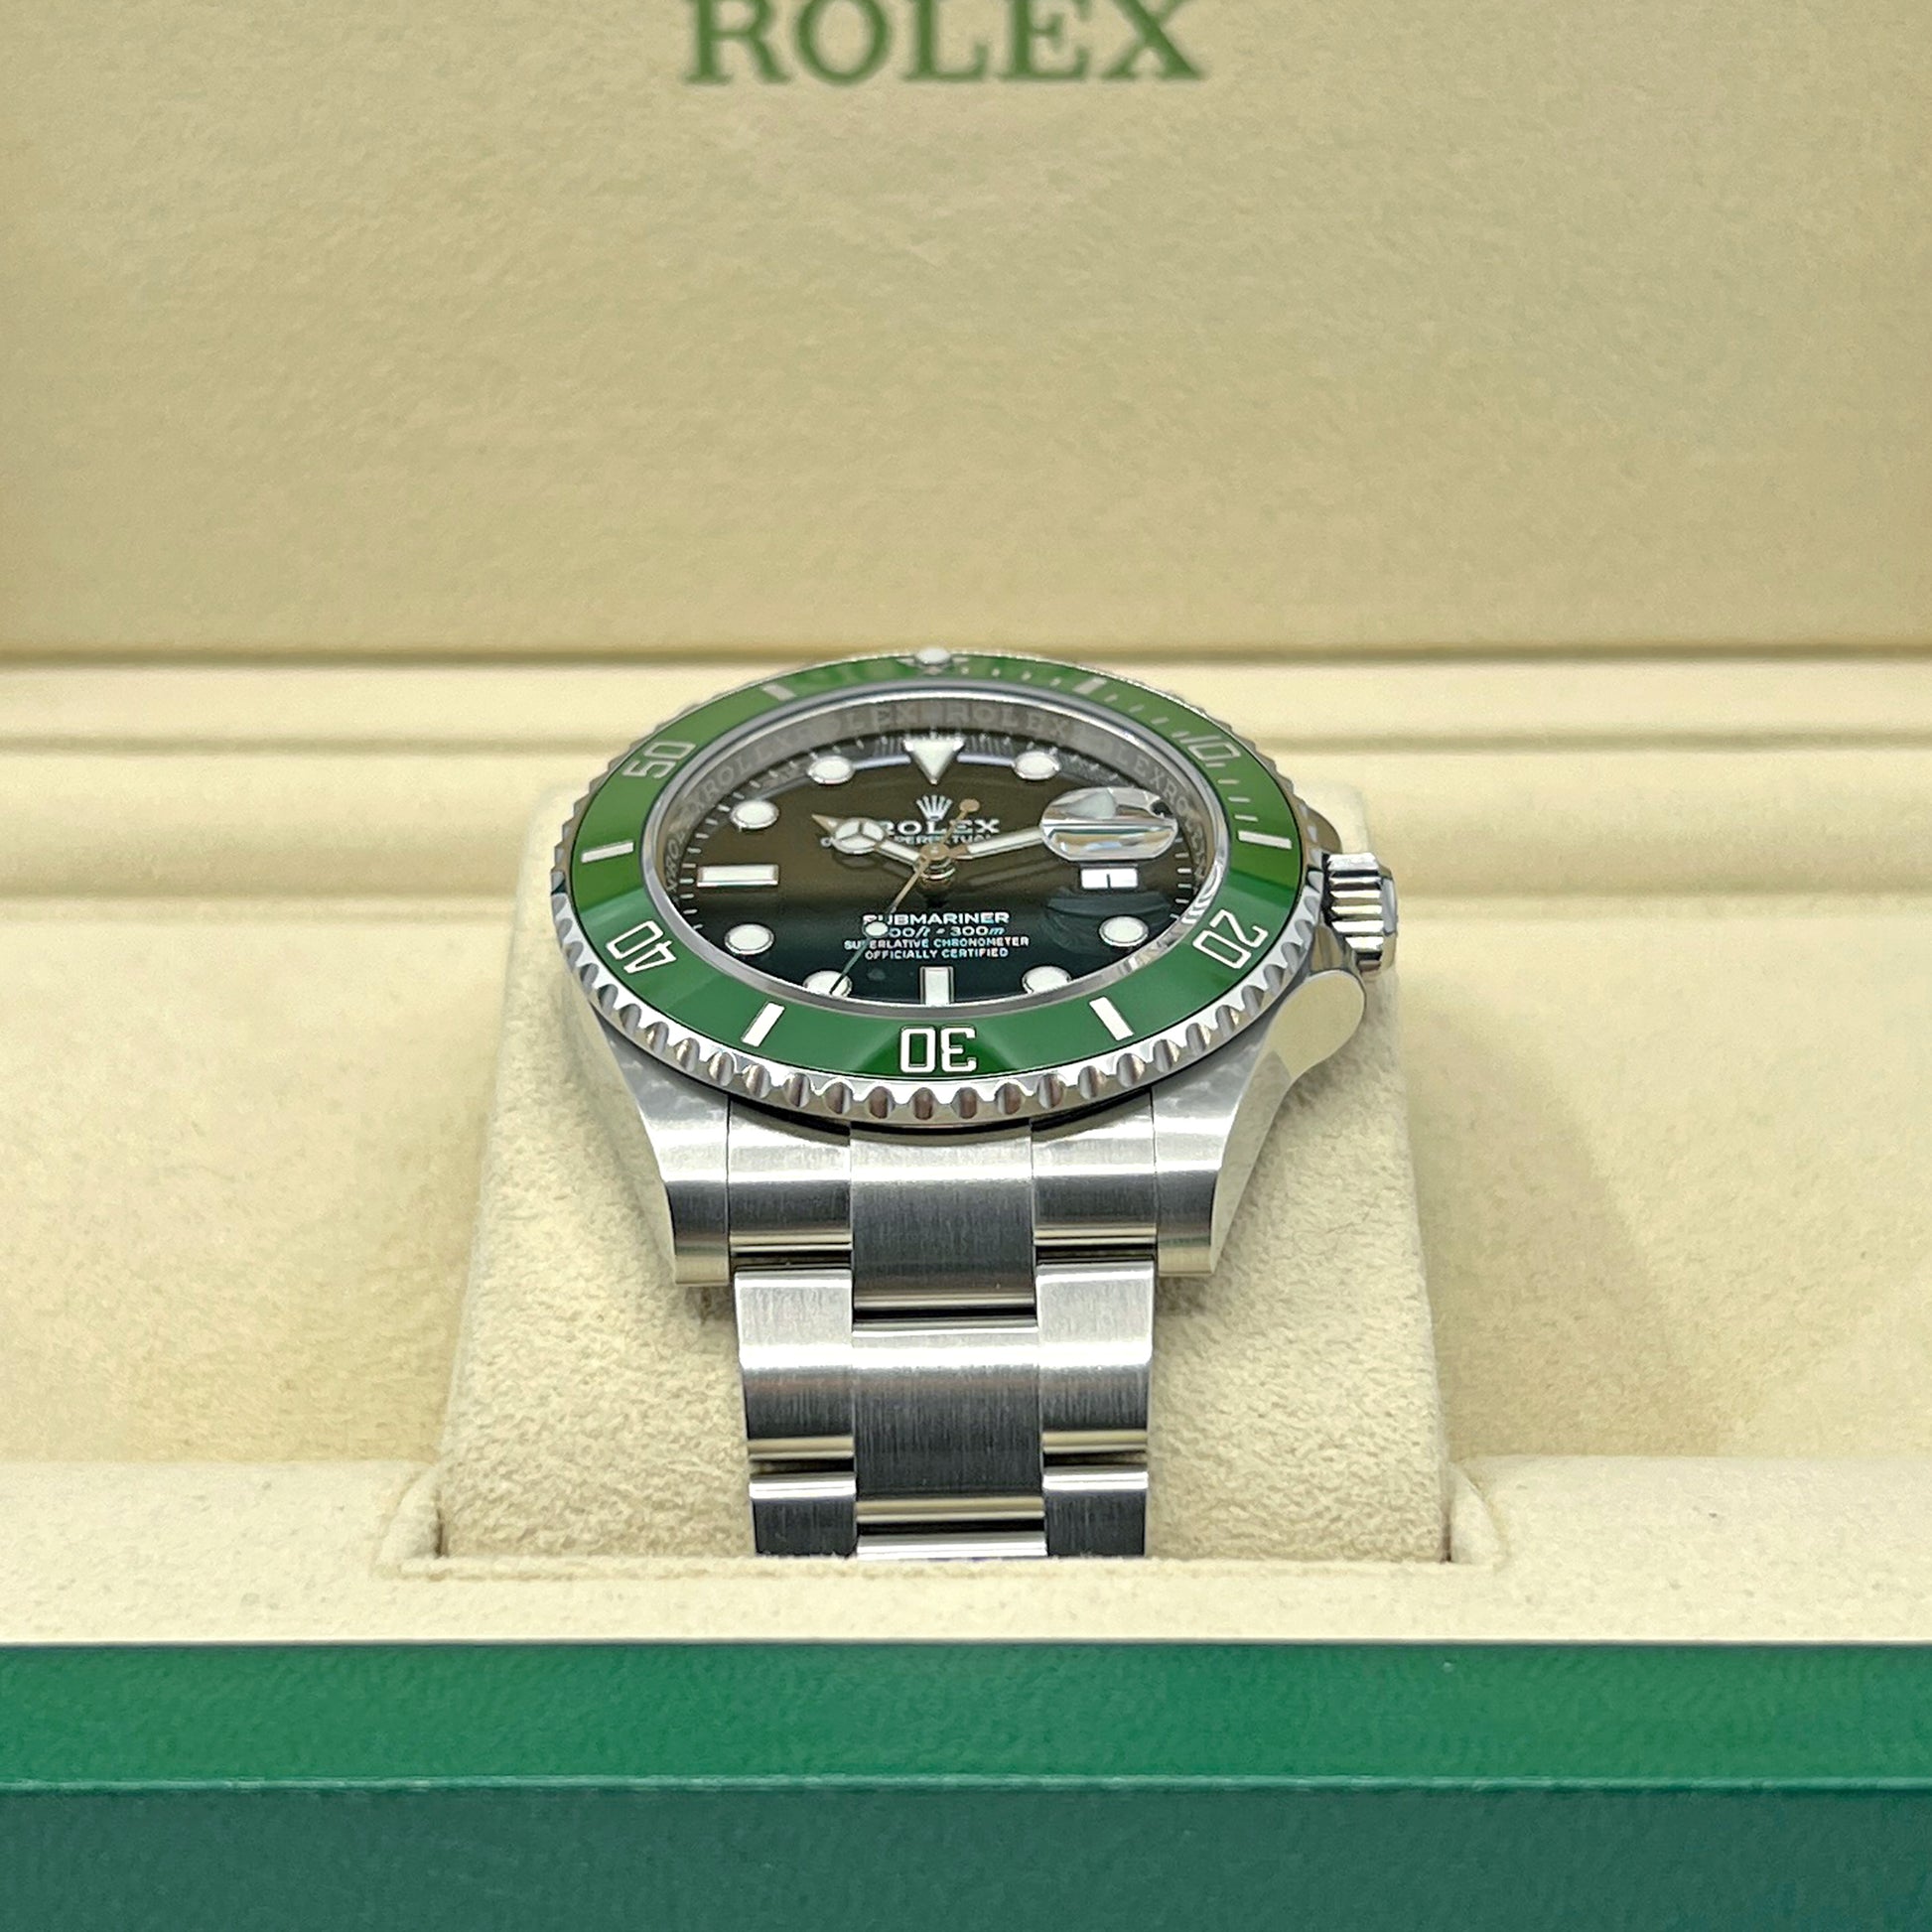 Rolex Submariner Date 126610lv Green Ceramic